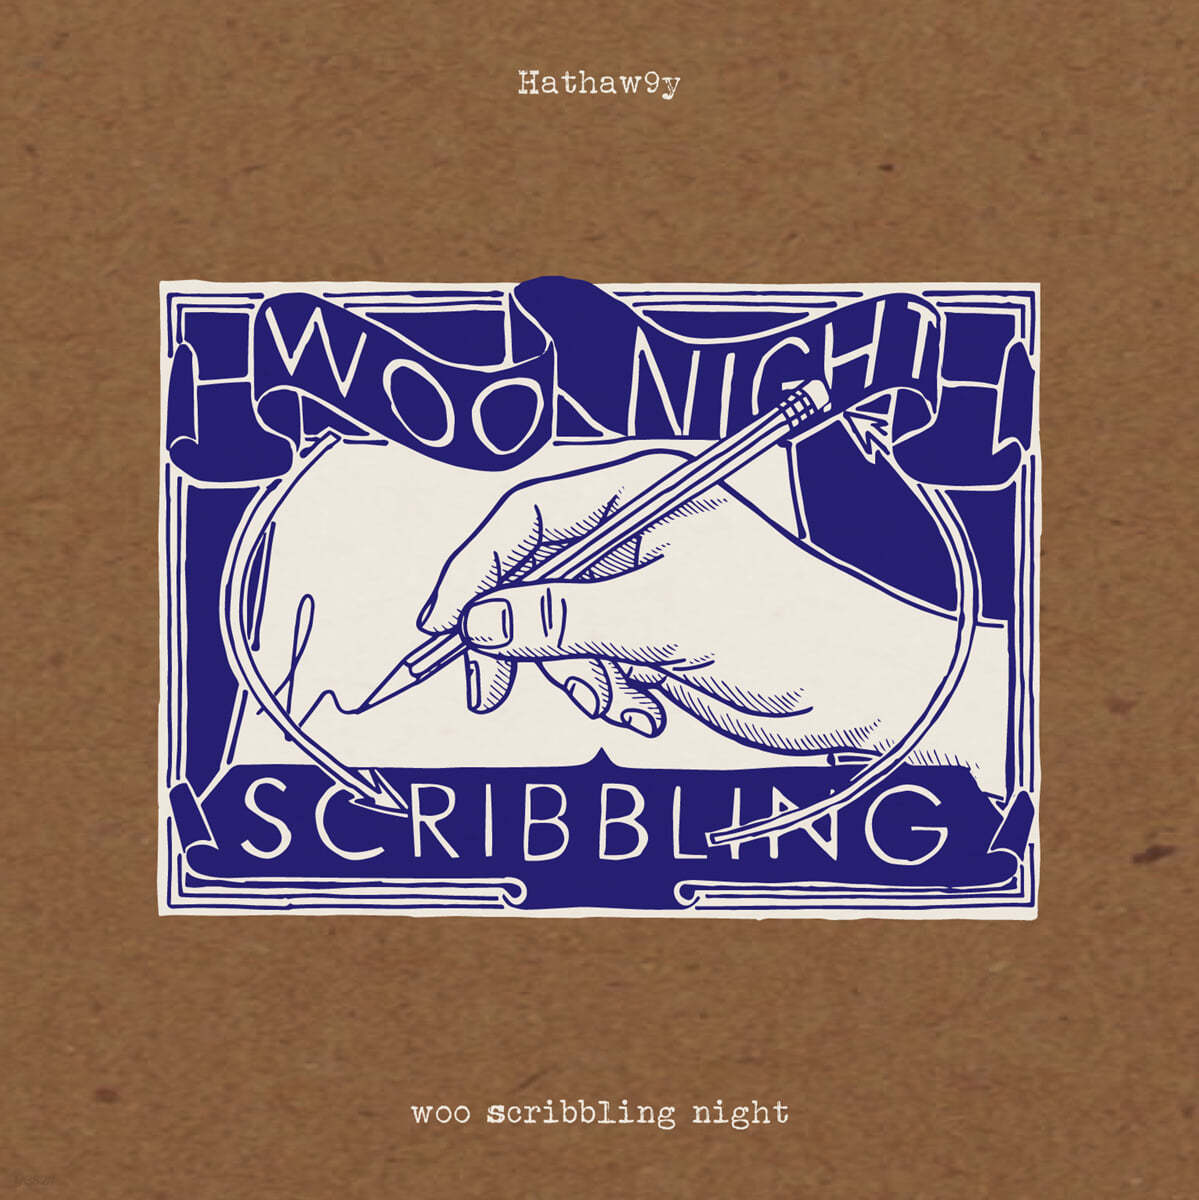 해서웨이 (Hathaw9y) - Woo Scribbling Night